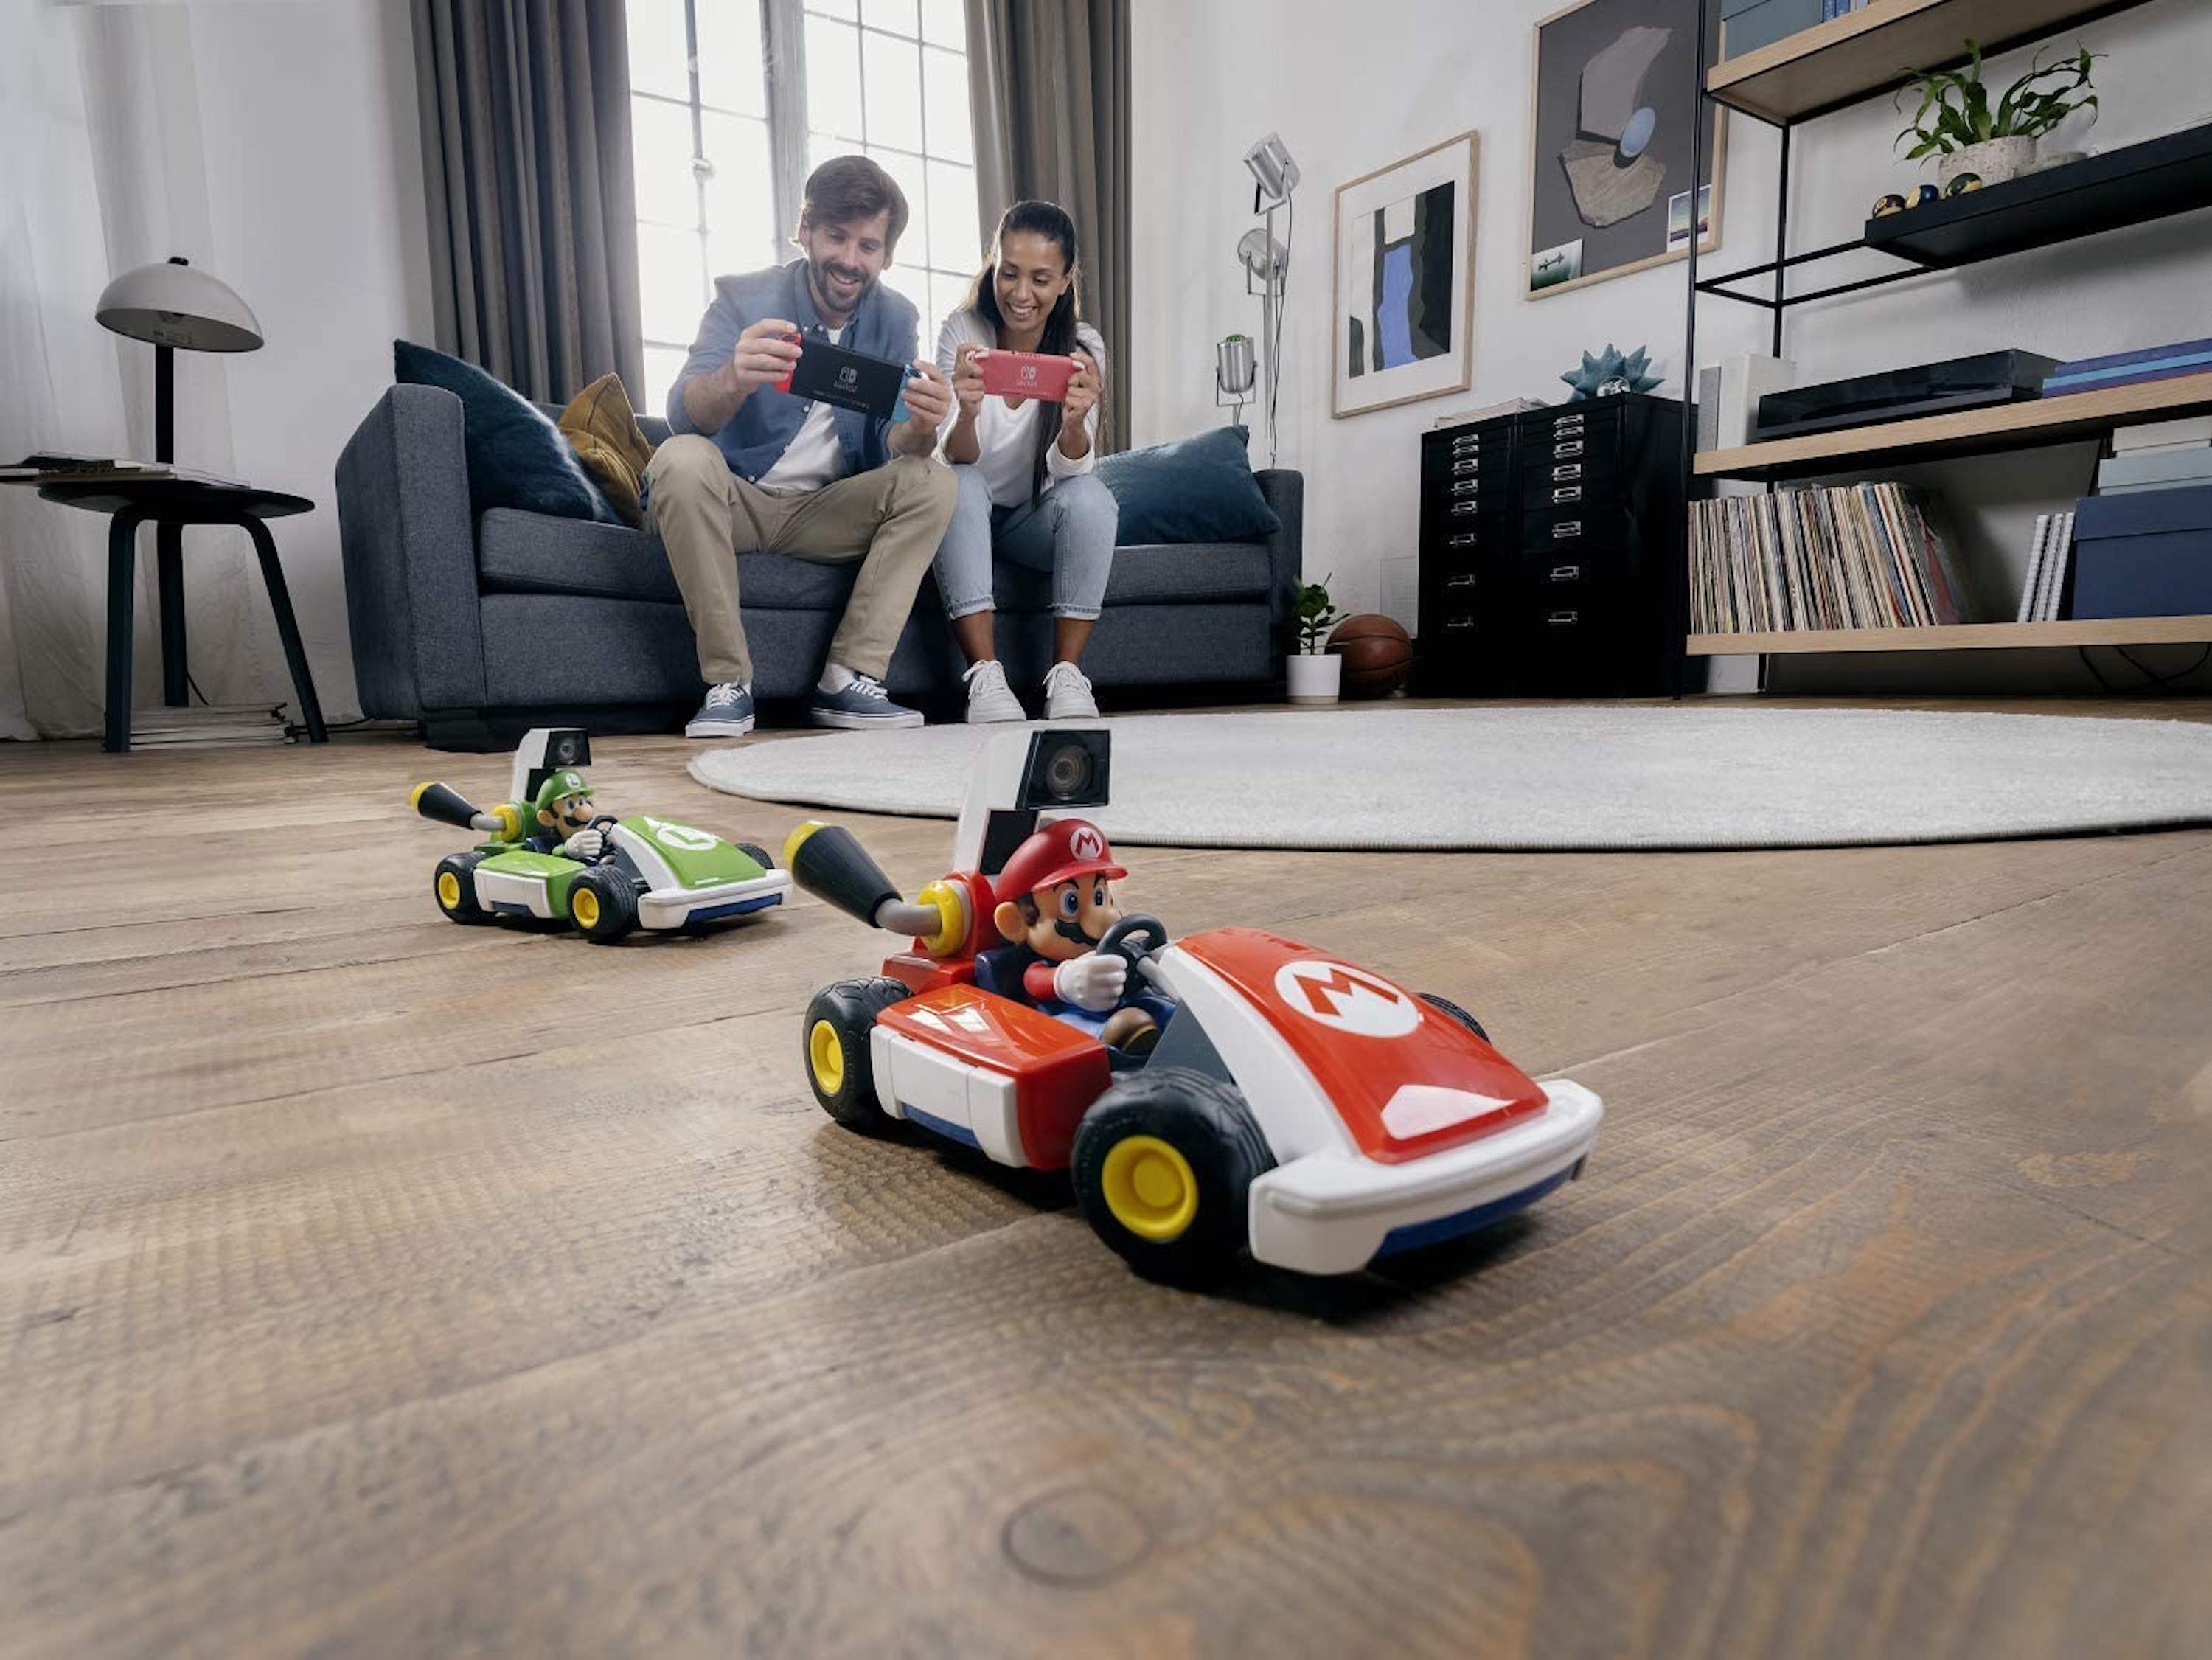 Mario Kart Live: el videojoc més real per transformar casa teva